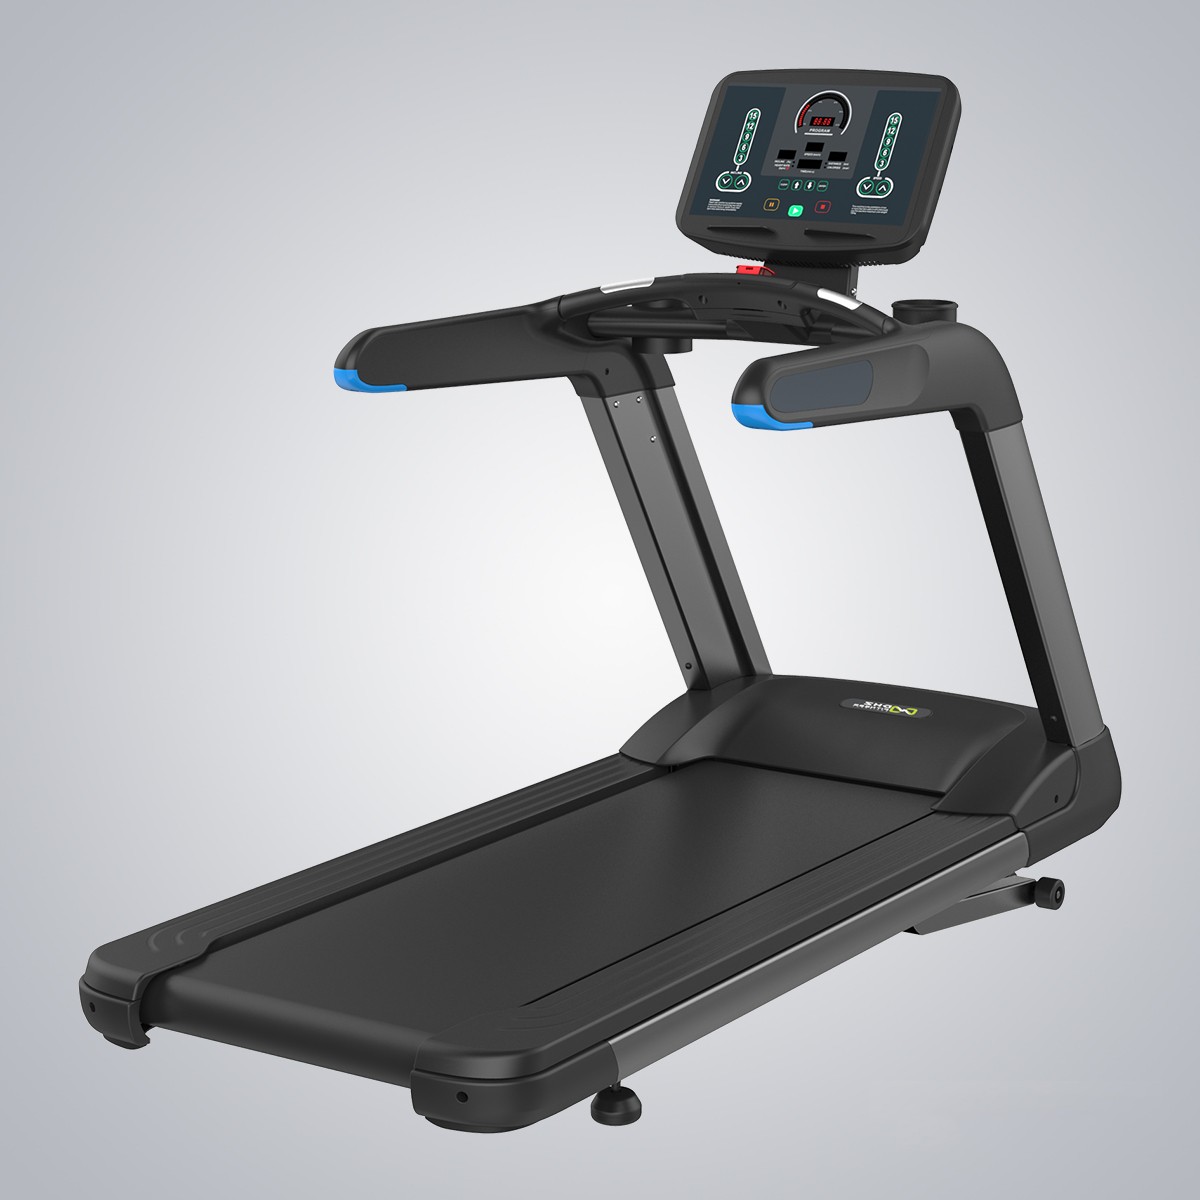 Treadmill X8500